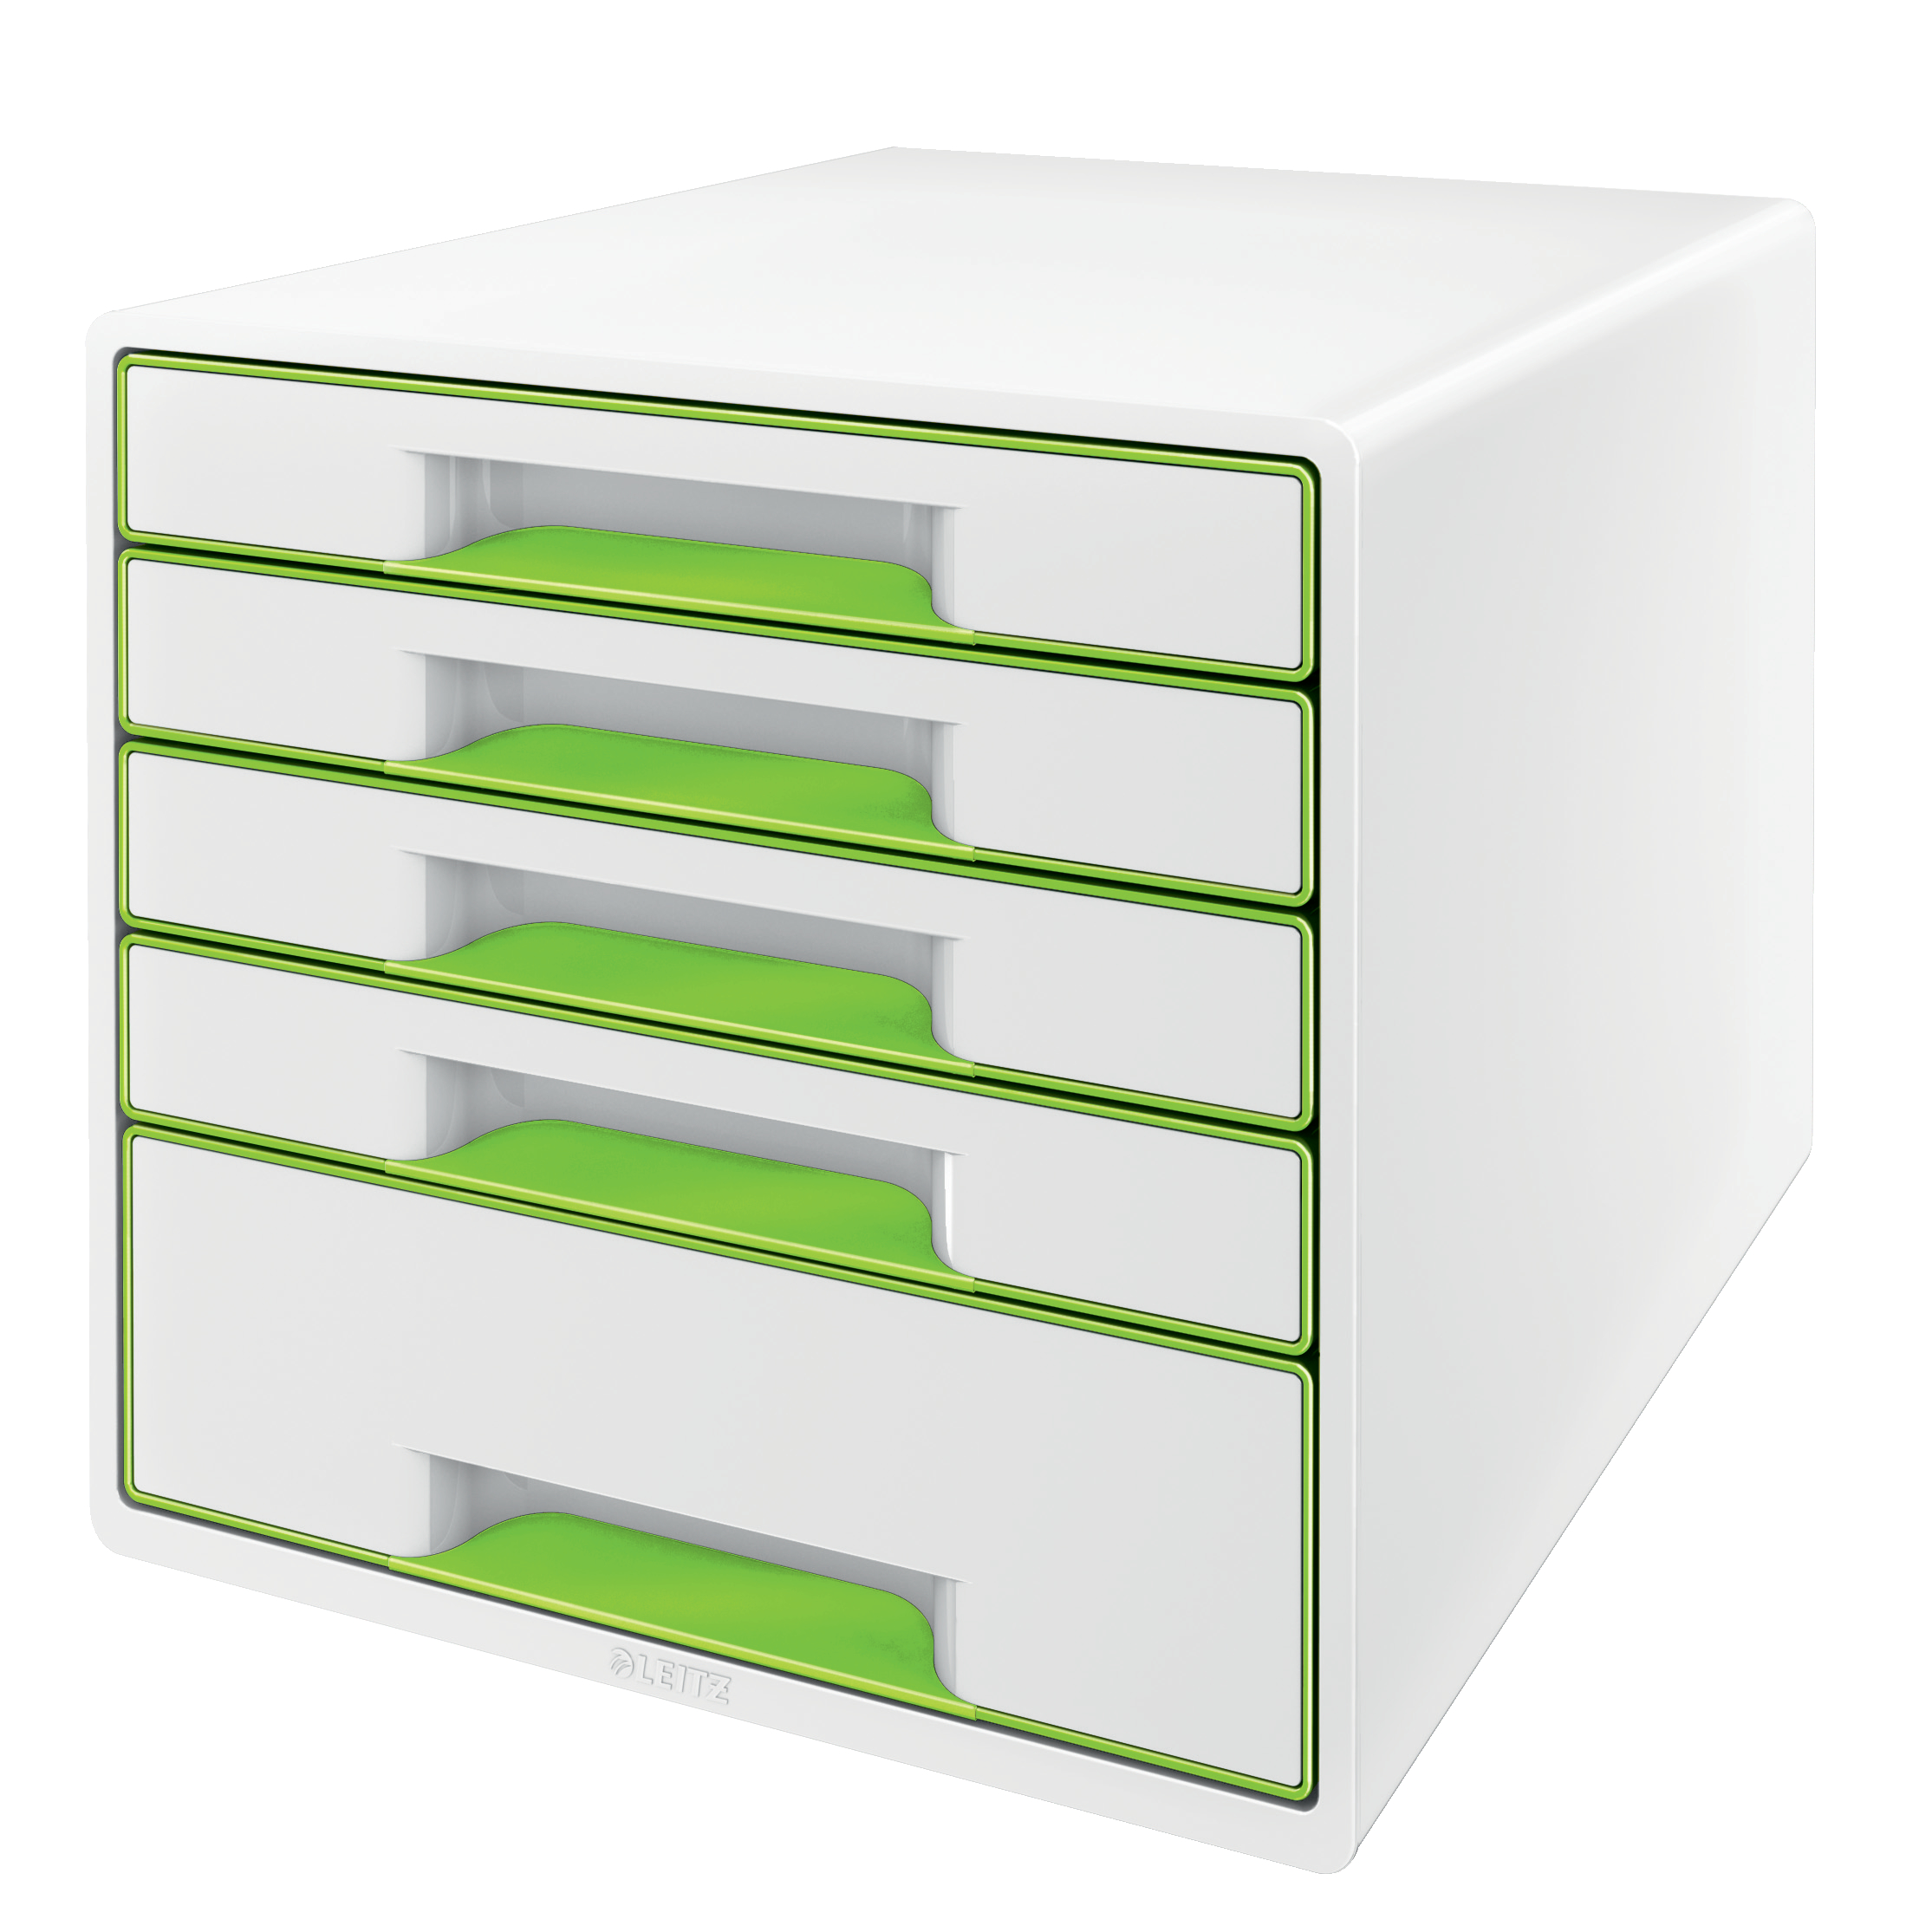 LEITZ Set tiroirs WOW Cube A4 5214-20-54 blanc/vert, 5 tiroirs blanc/vert, 5 tiroirs